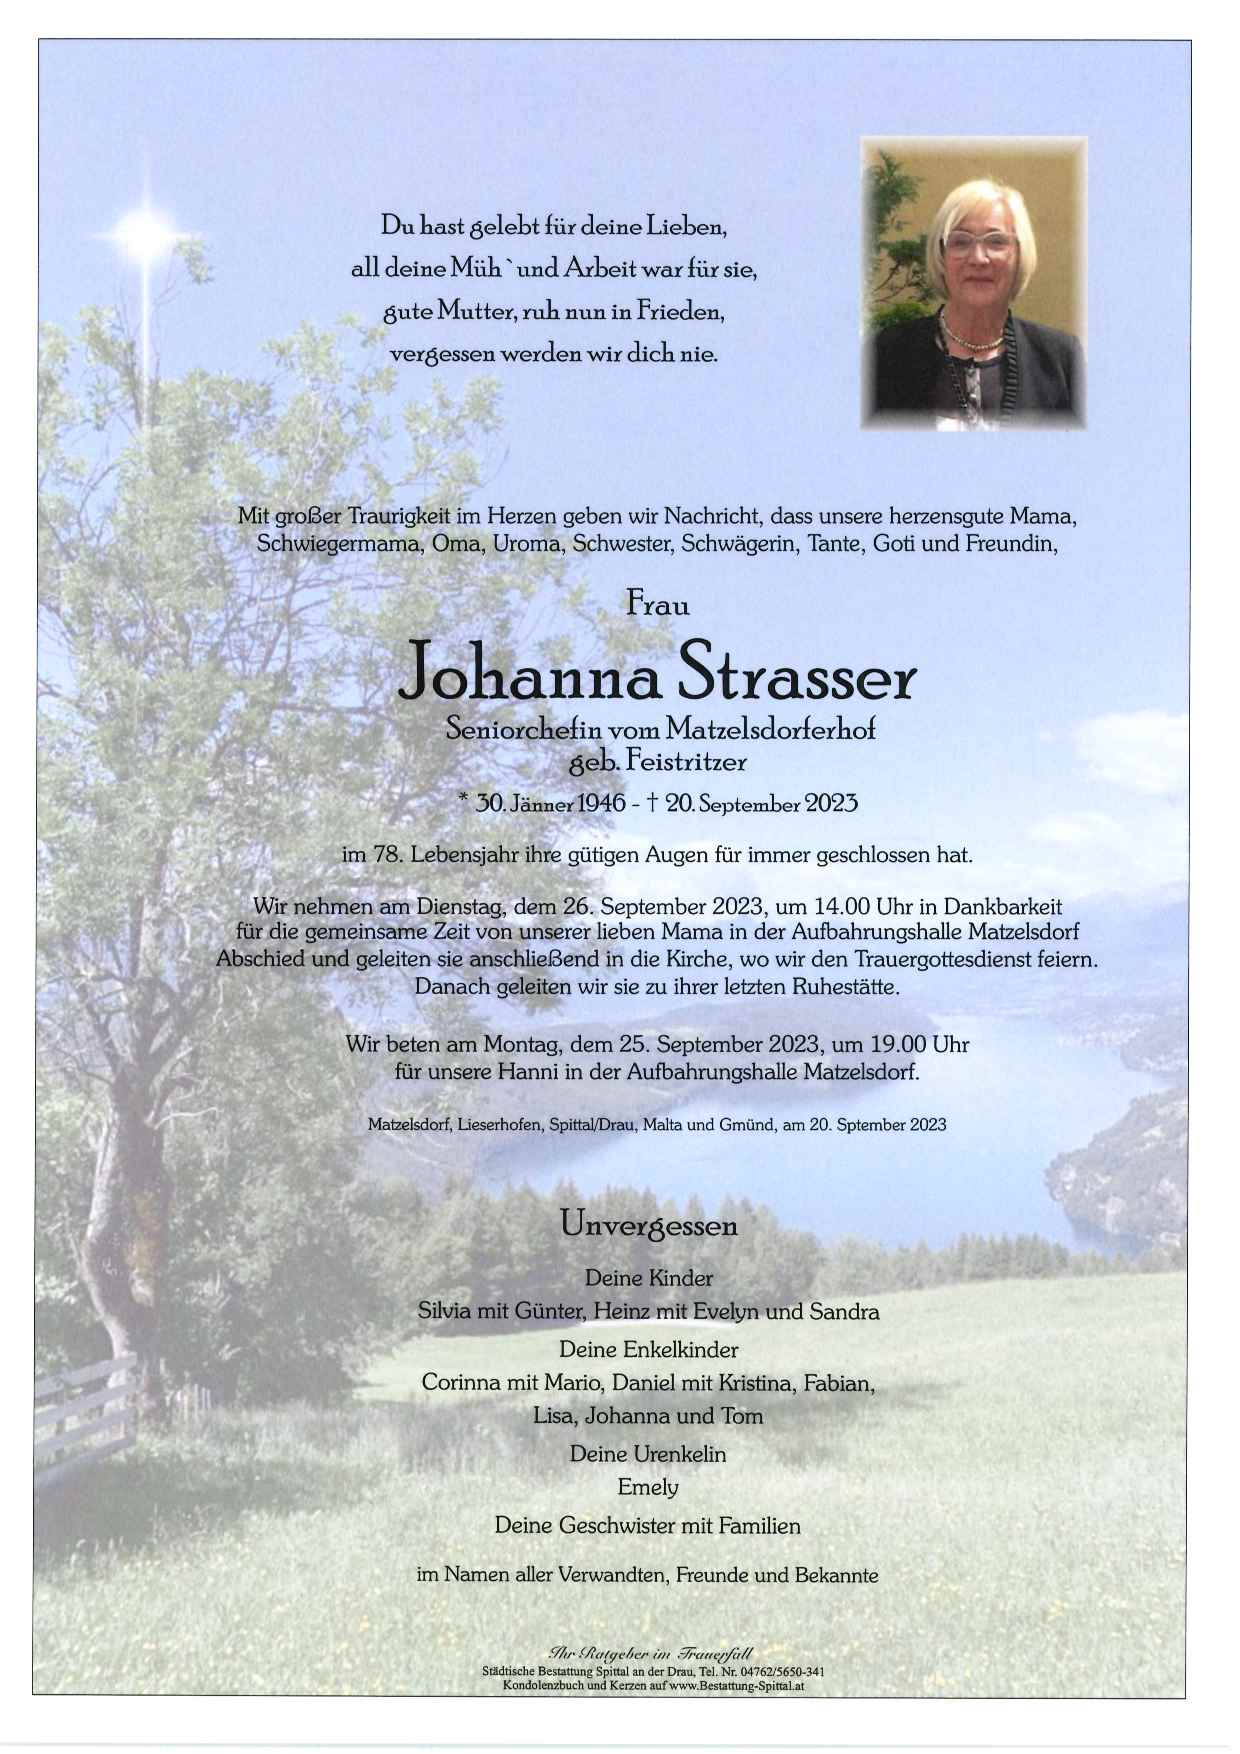 Johanna Strasser